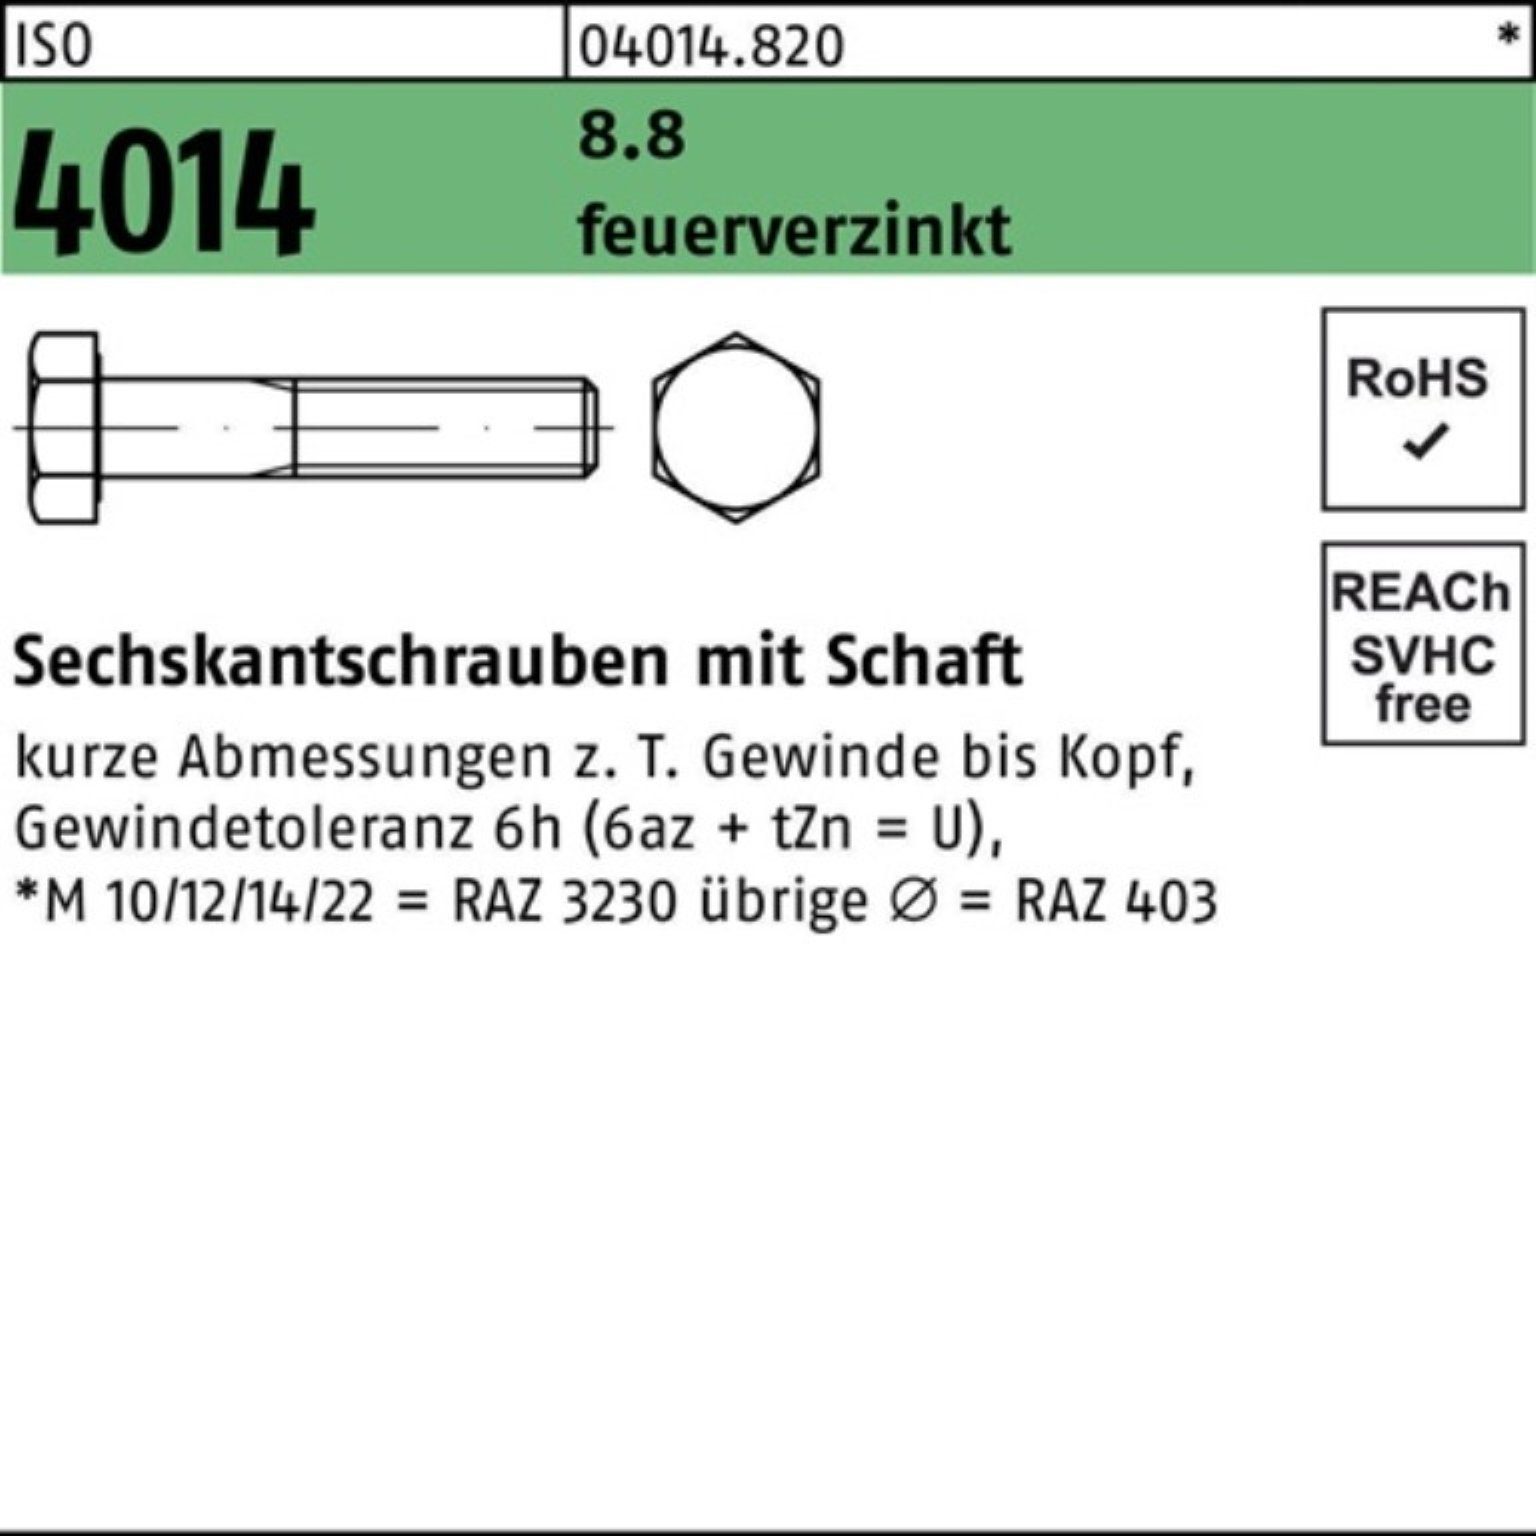 Bufab Sechskantschraube 100er Pack Sechskantschraube ISO 4014 Schaft M12x 200 8.8 feuerverz. 2